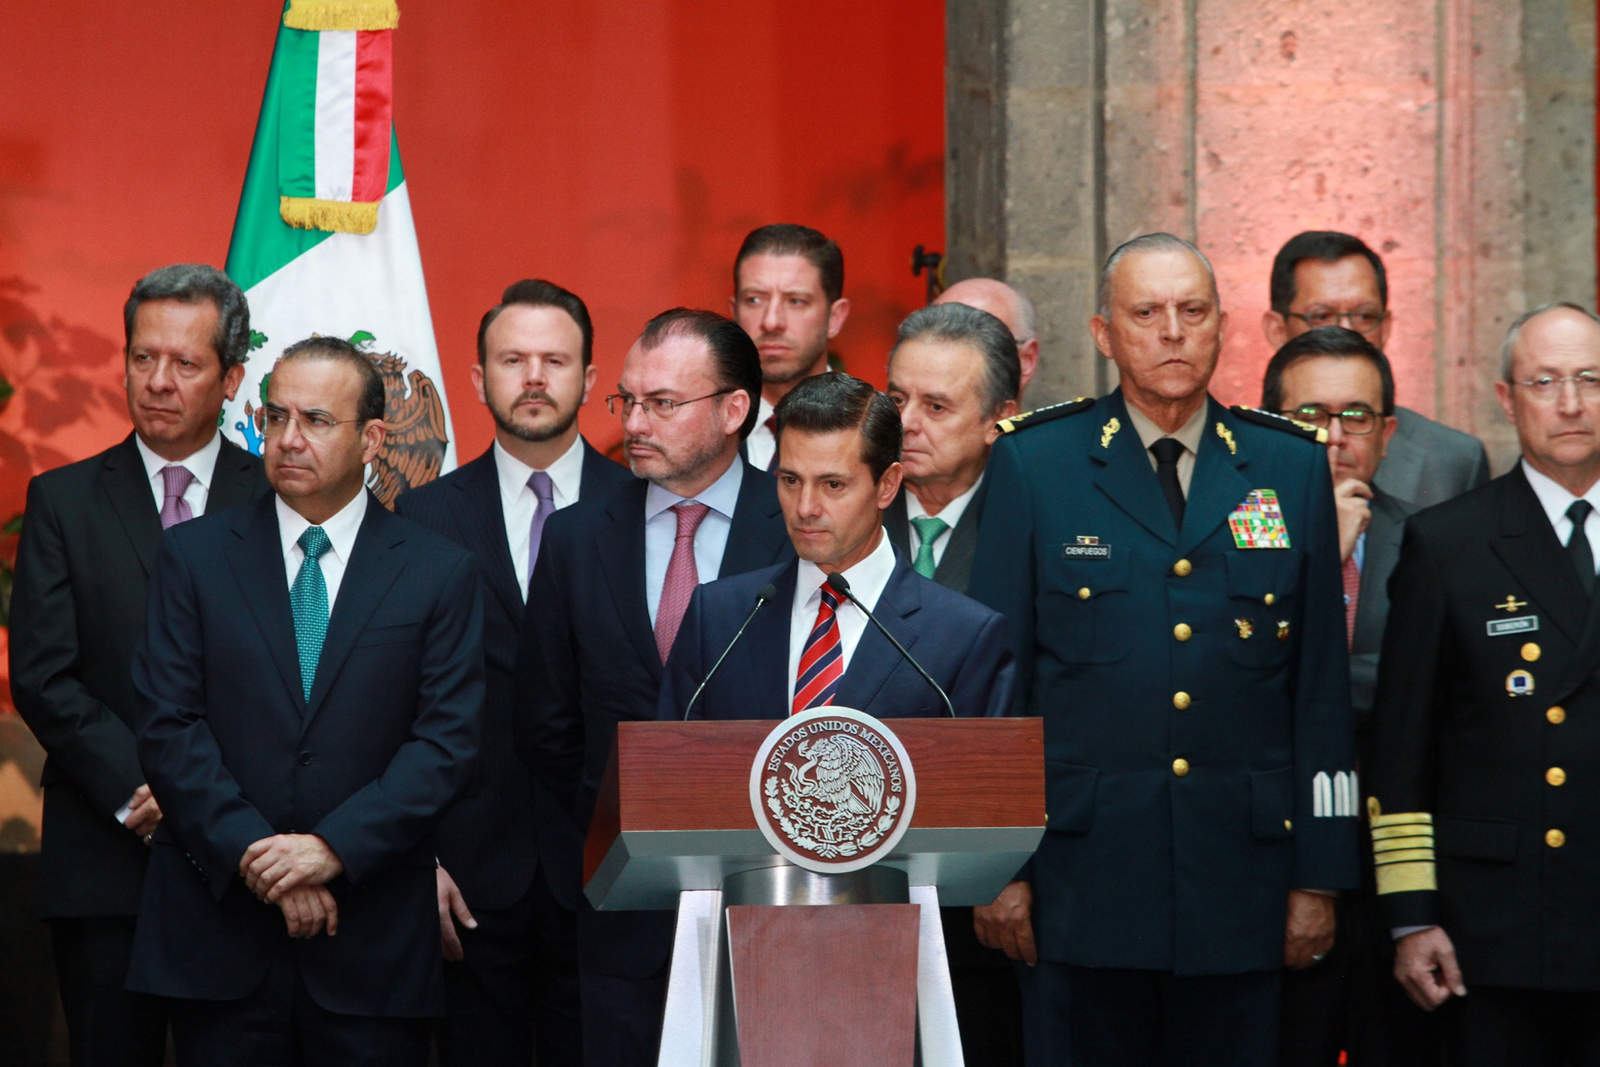 Protección. El gabinete del presidente Enrique Peña Nieto se queda sin la protección de al menos 200 elementos del EMP. (AGENCIAS)